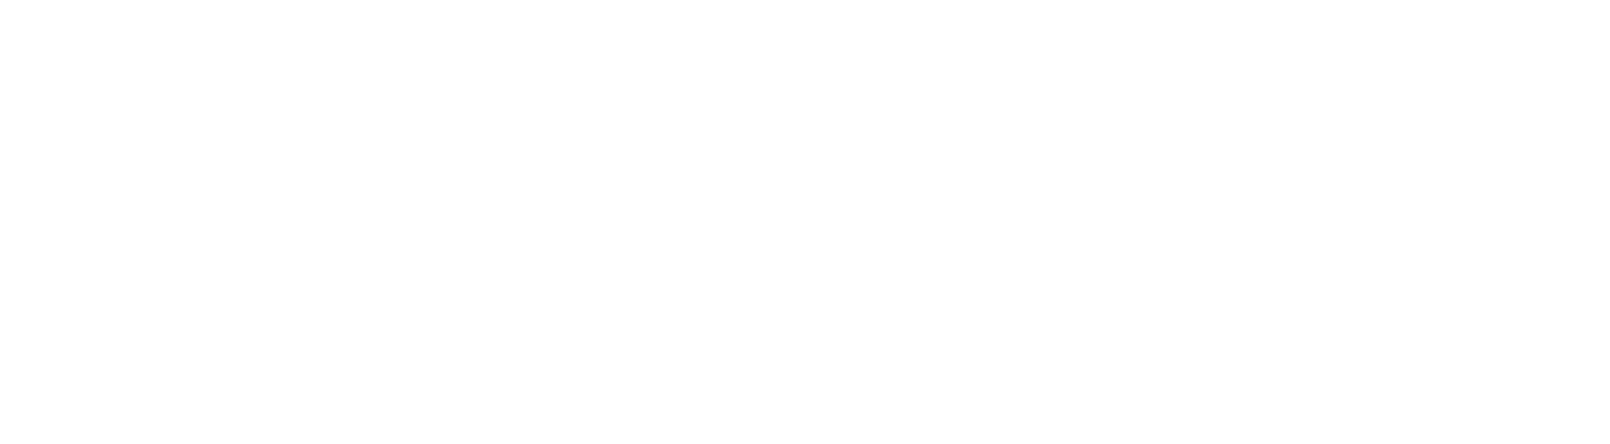 Aurora Innovation Logo groß für dunkle Hintergründe (transparentes PNG)